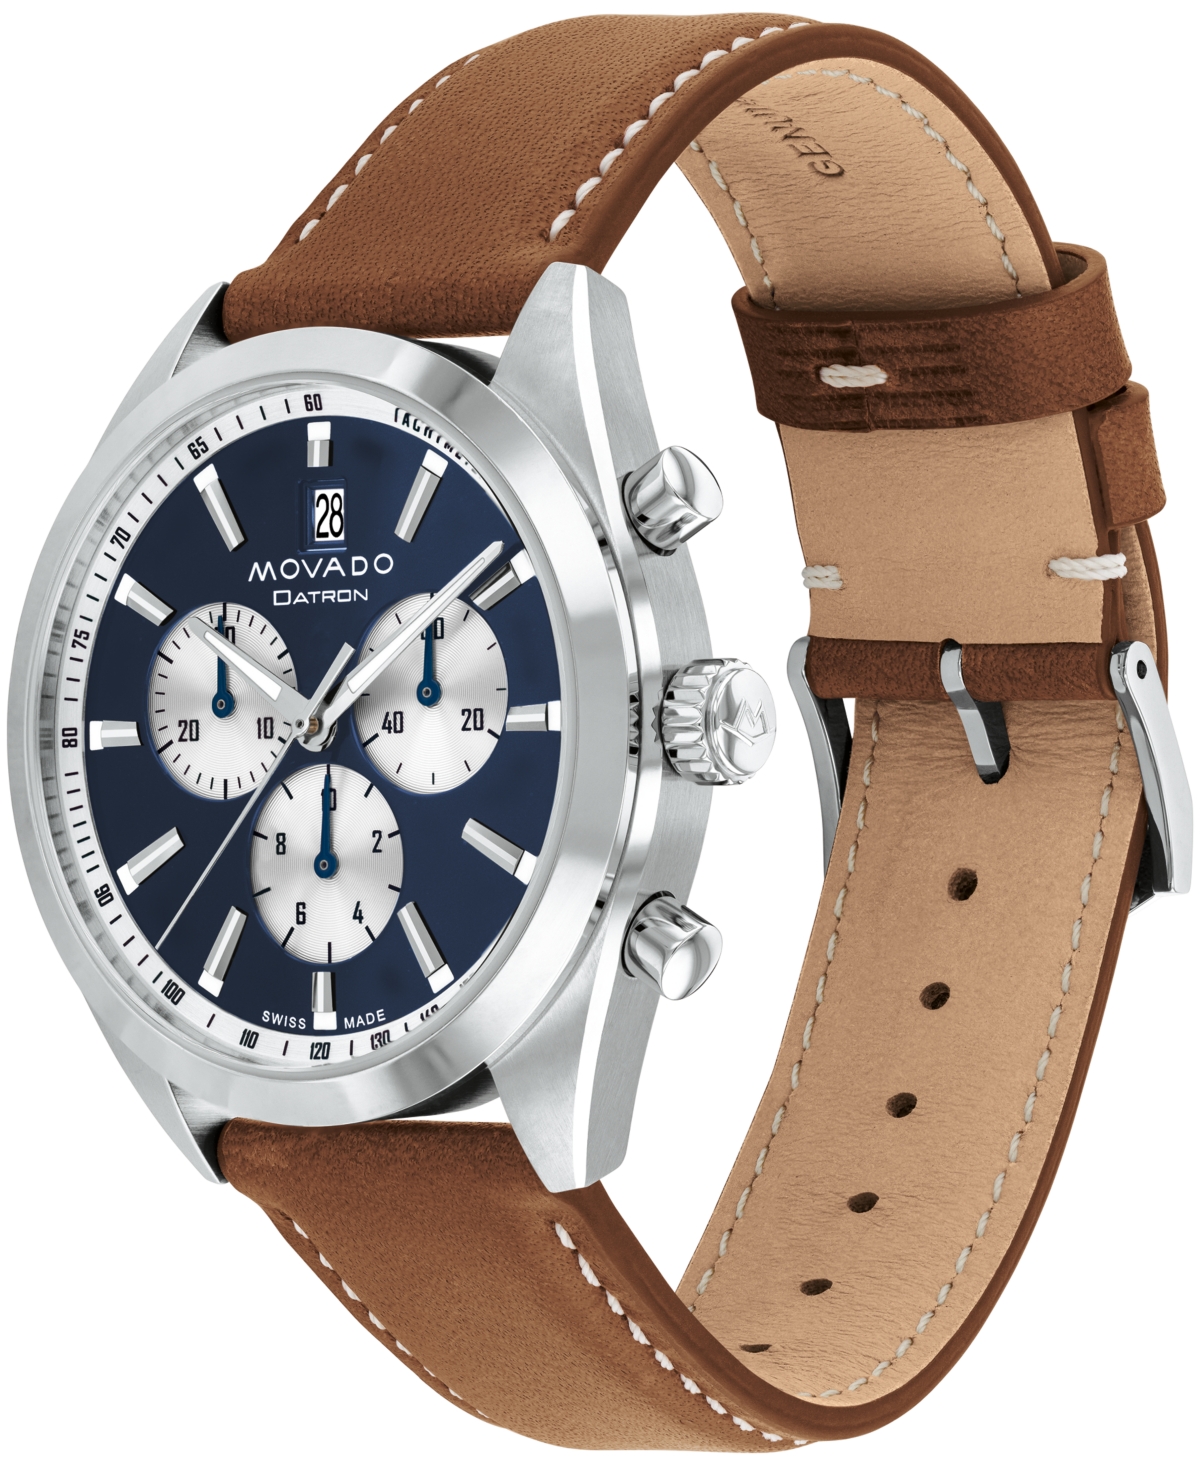 Shop Movado Men's Datron Swiss Quartz Chrono Cognac Leather Watch 40mm